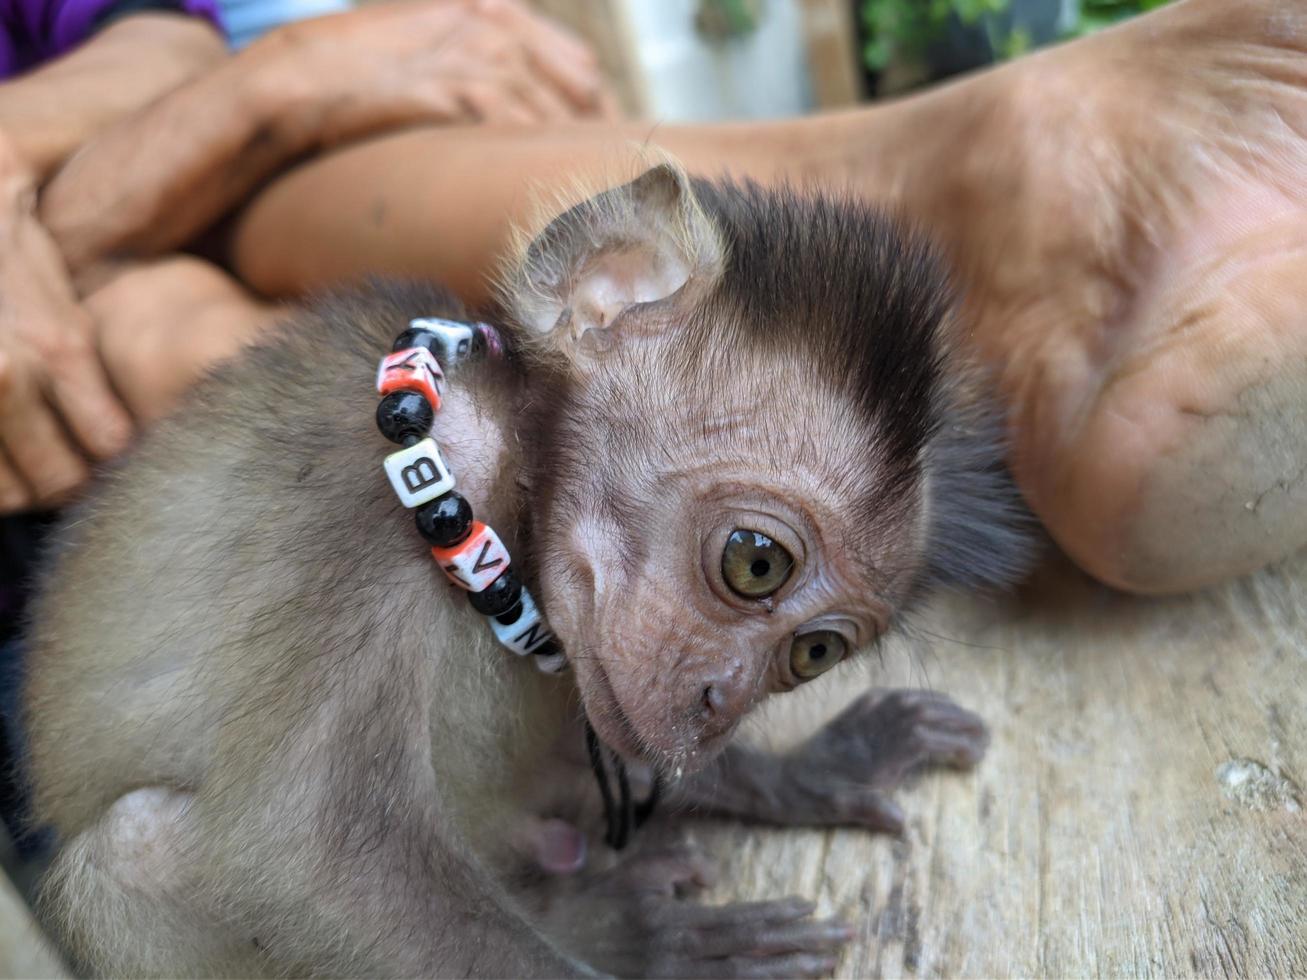 mono bebé separado de su madre y adoptado por humanos, conservación foto